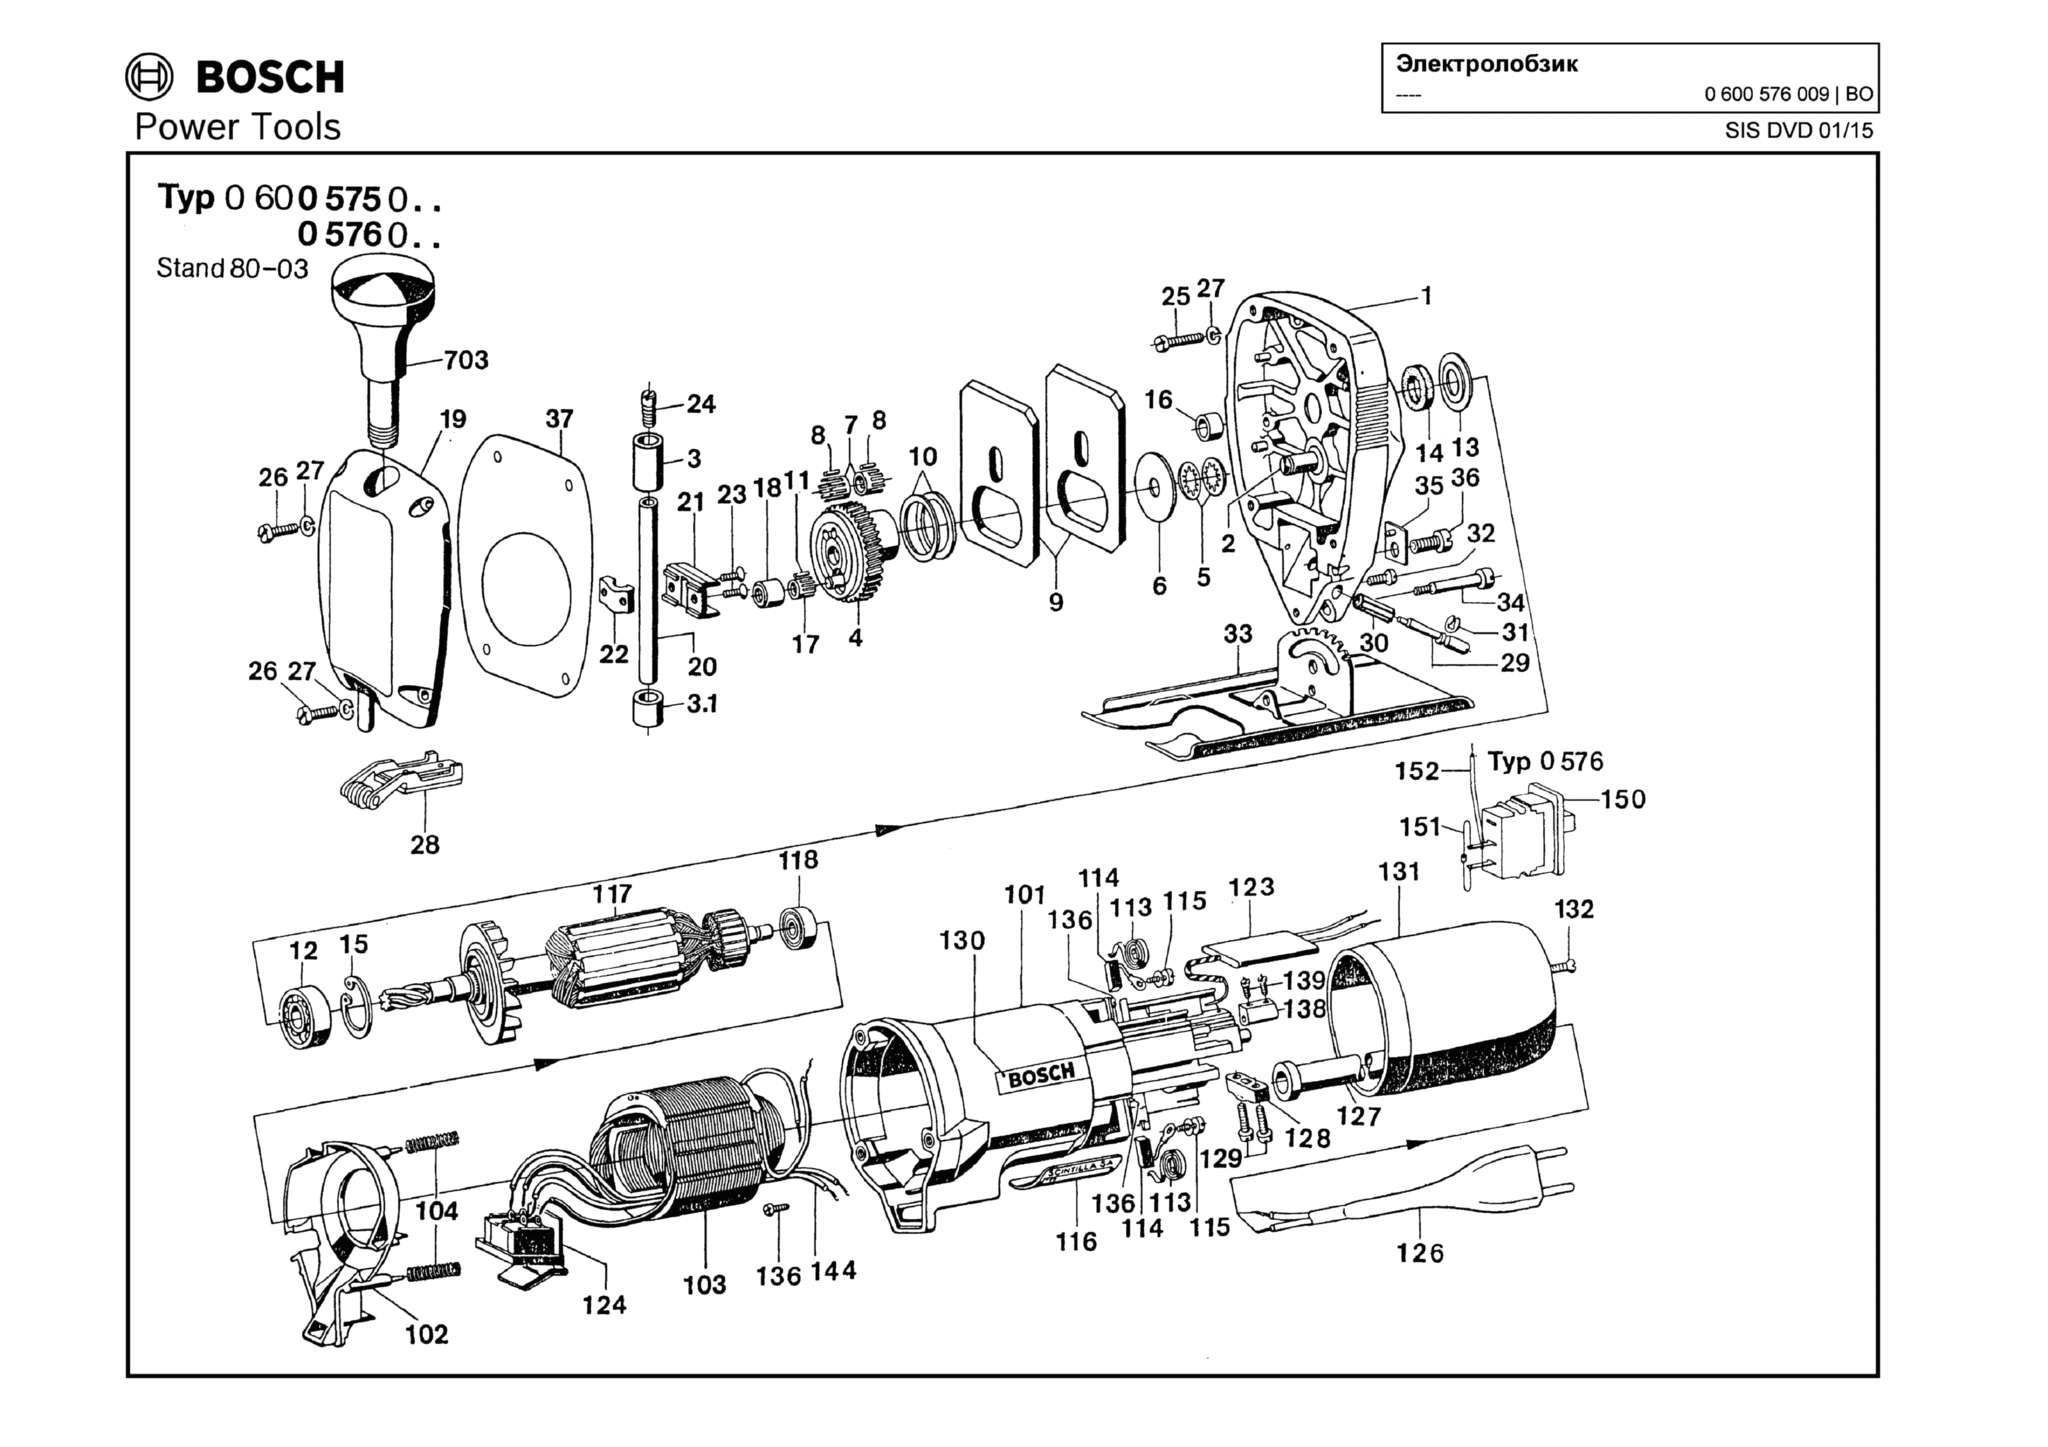 Запчасти, схема и деталировка Bosch (ТИП 0600576009)